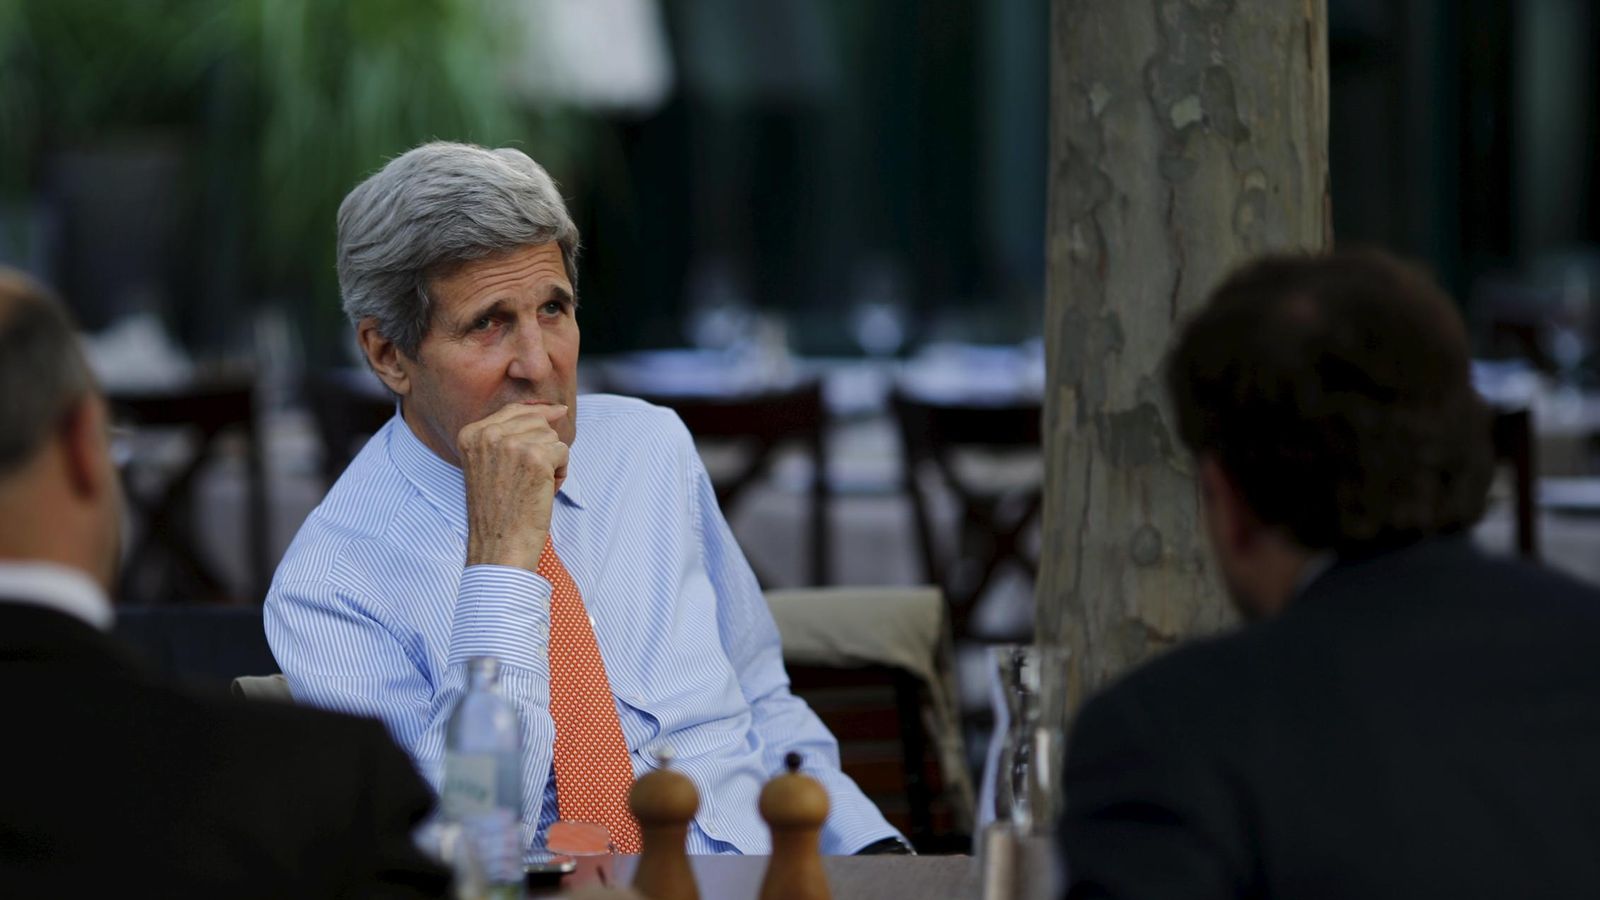 Foto: John Kerry prepara una reunión con los responsables de las negociaciones iraníes en Viena. (Reuters)